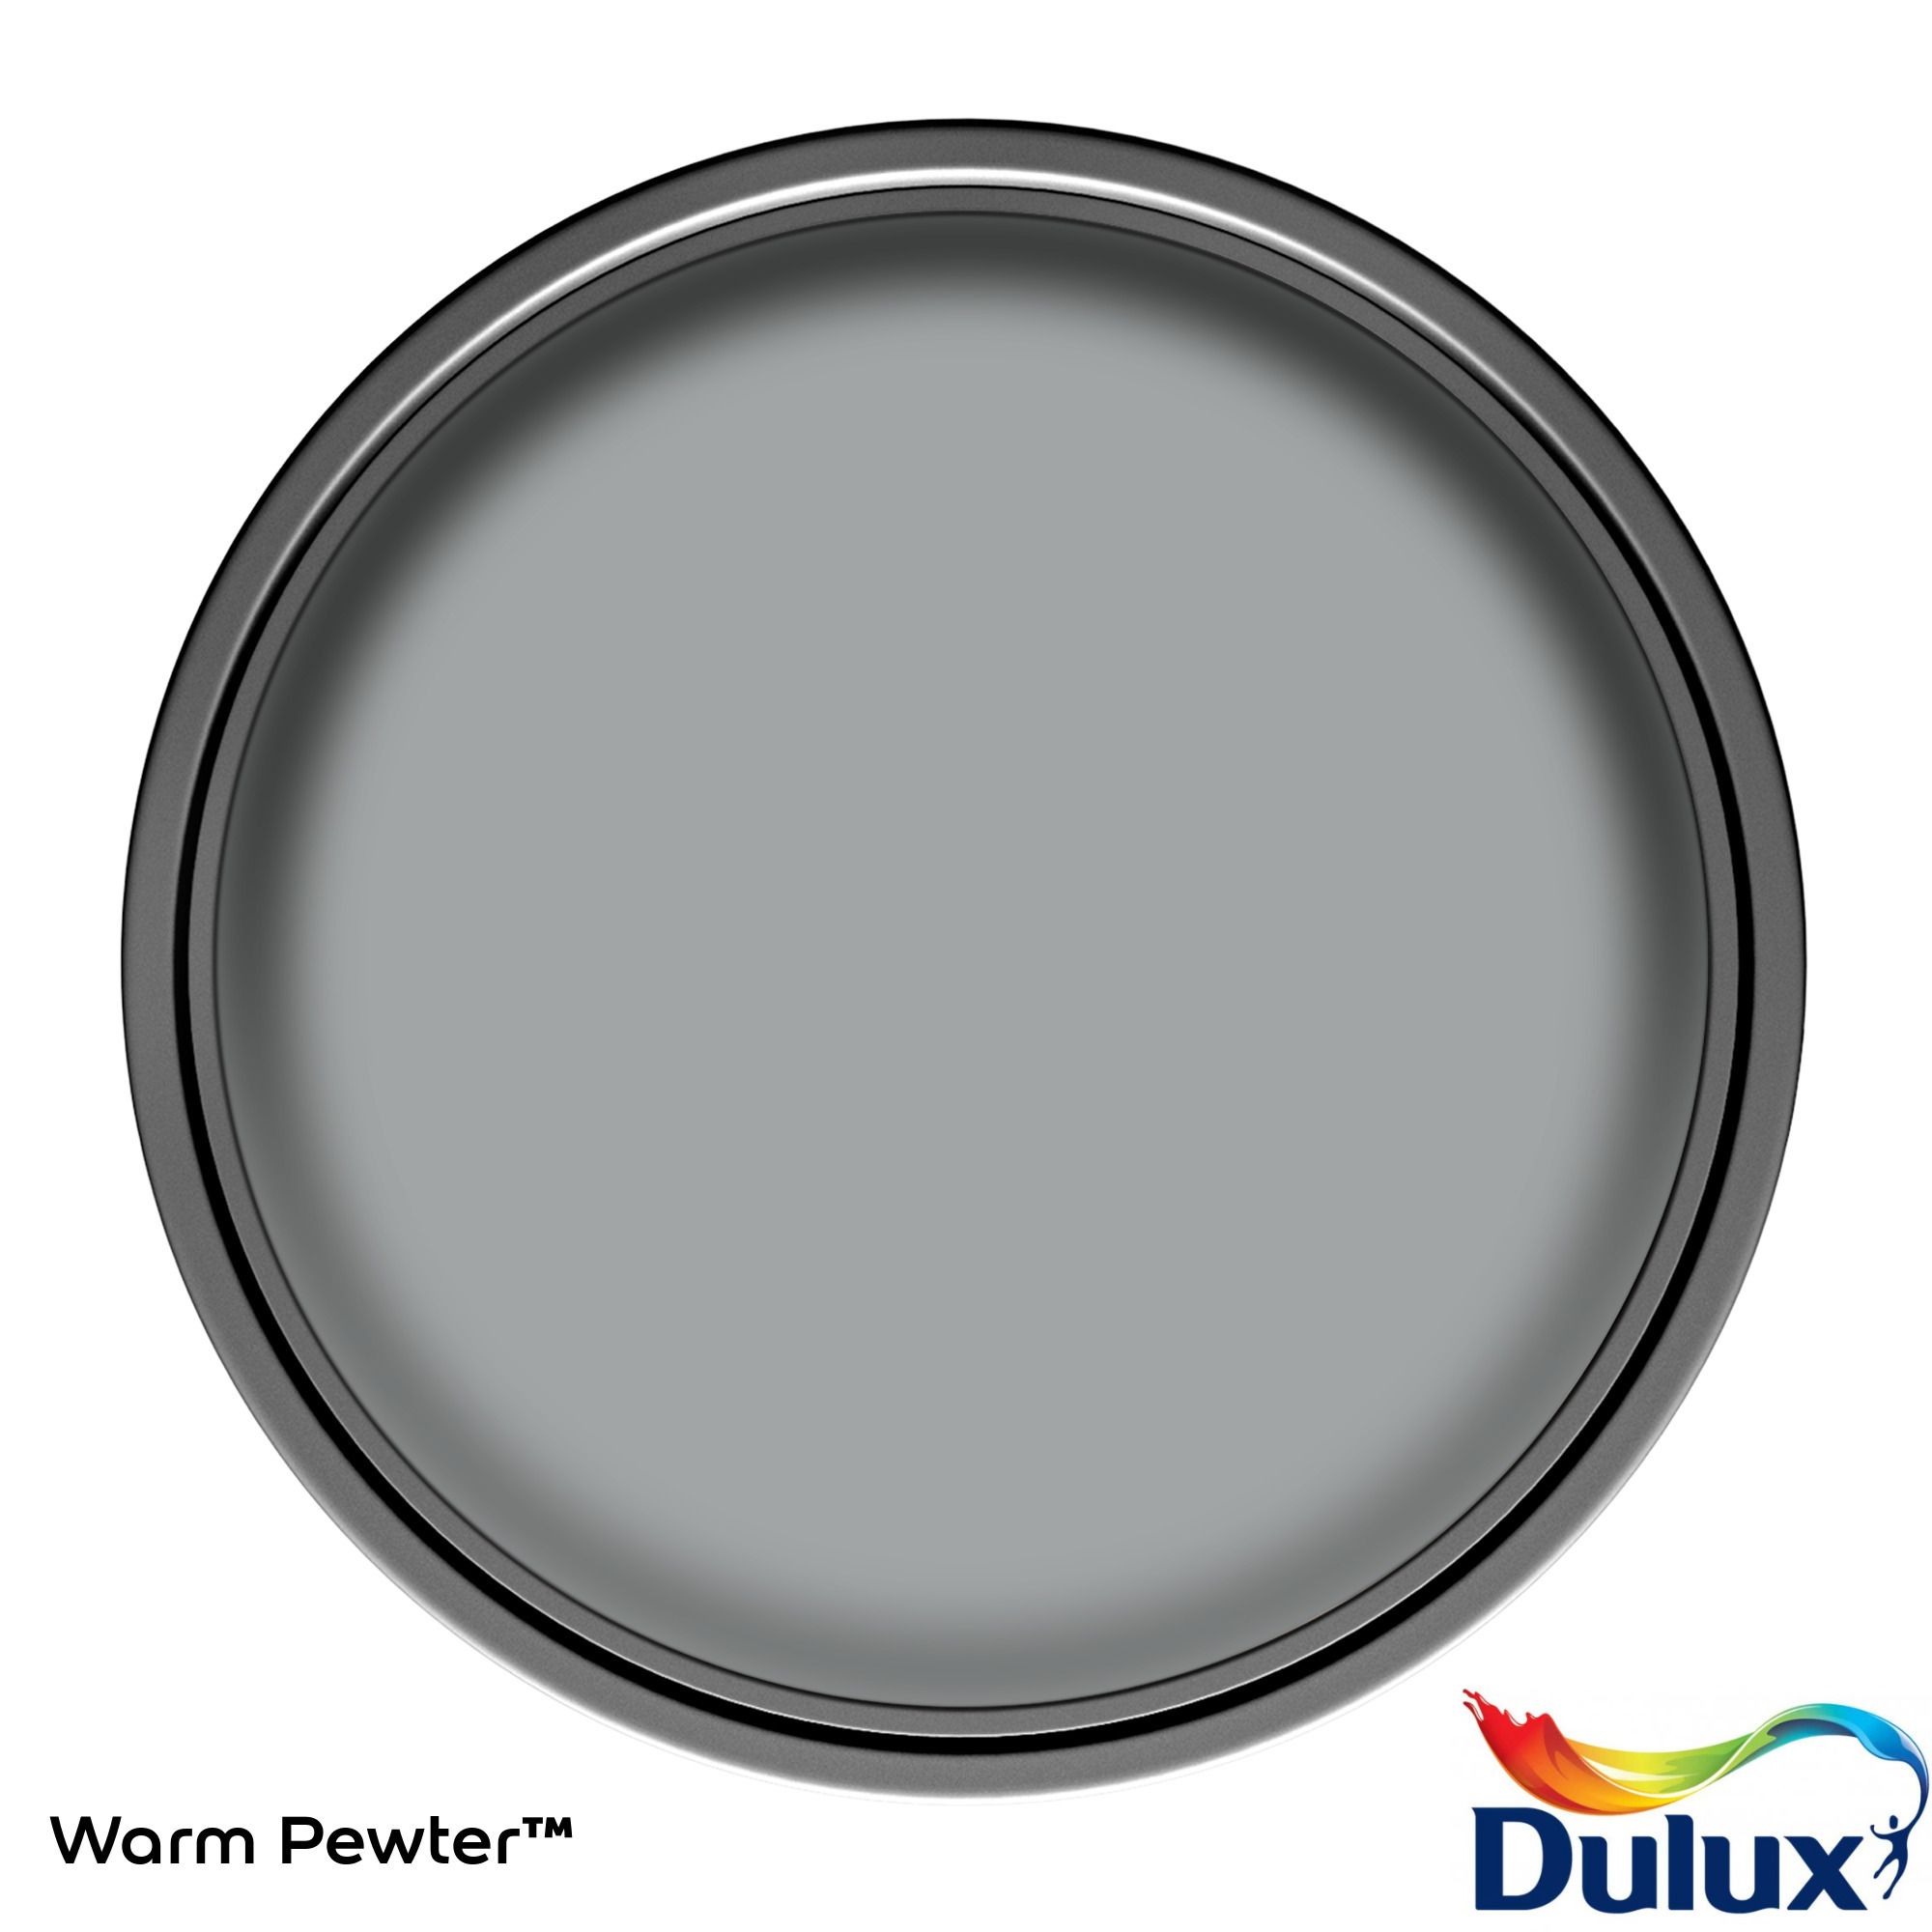 Dulux One coat Warm pewter Matt Emulsion paint, 5L